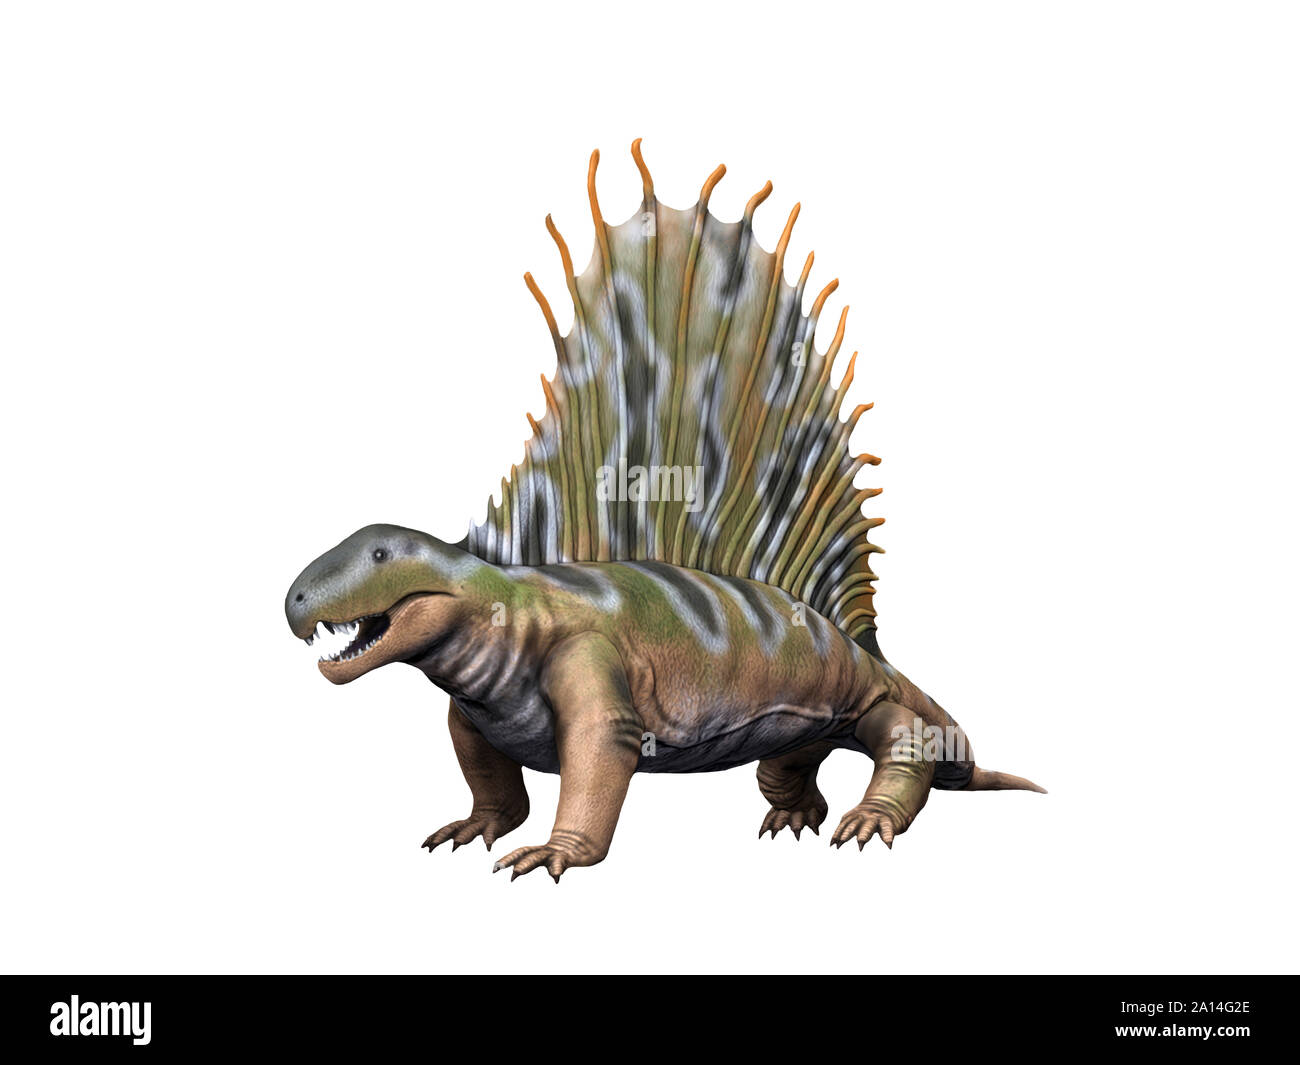 Dimetrodon gigashomegenes dinosaur, white background. Stock Photo